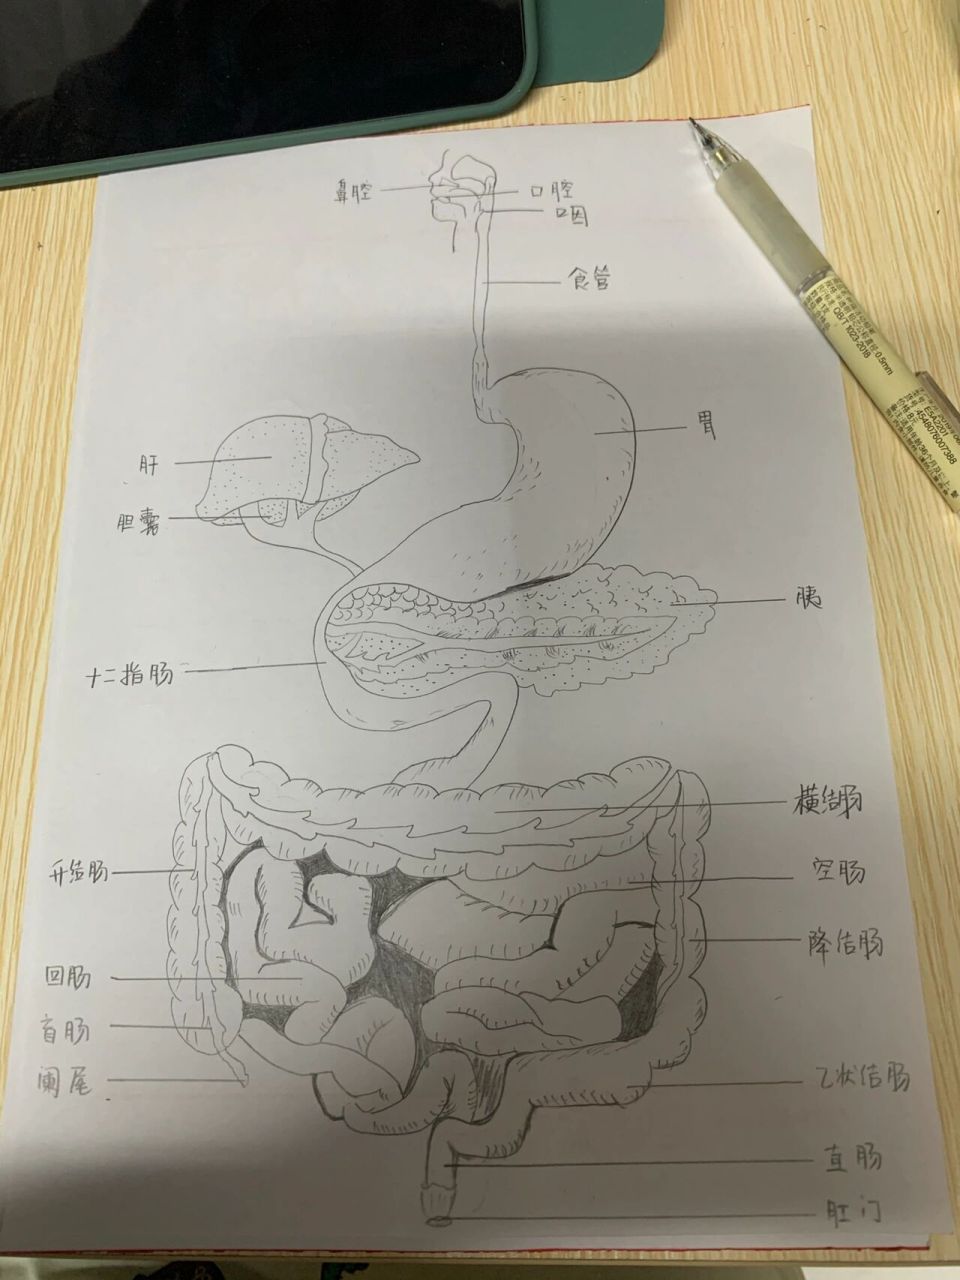 消化系统结构简图手绘图片